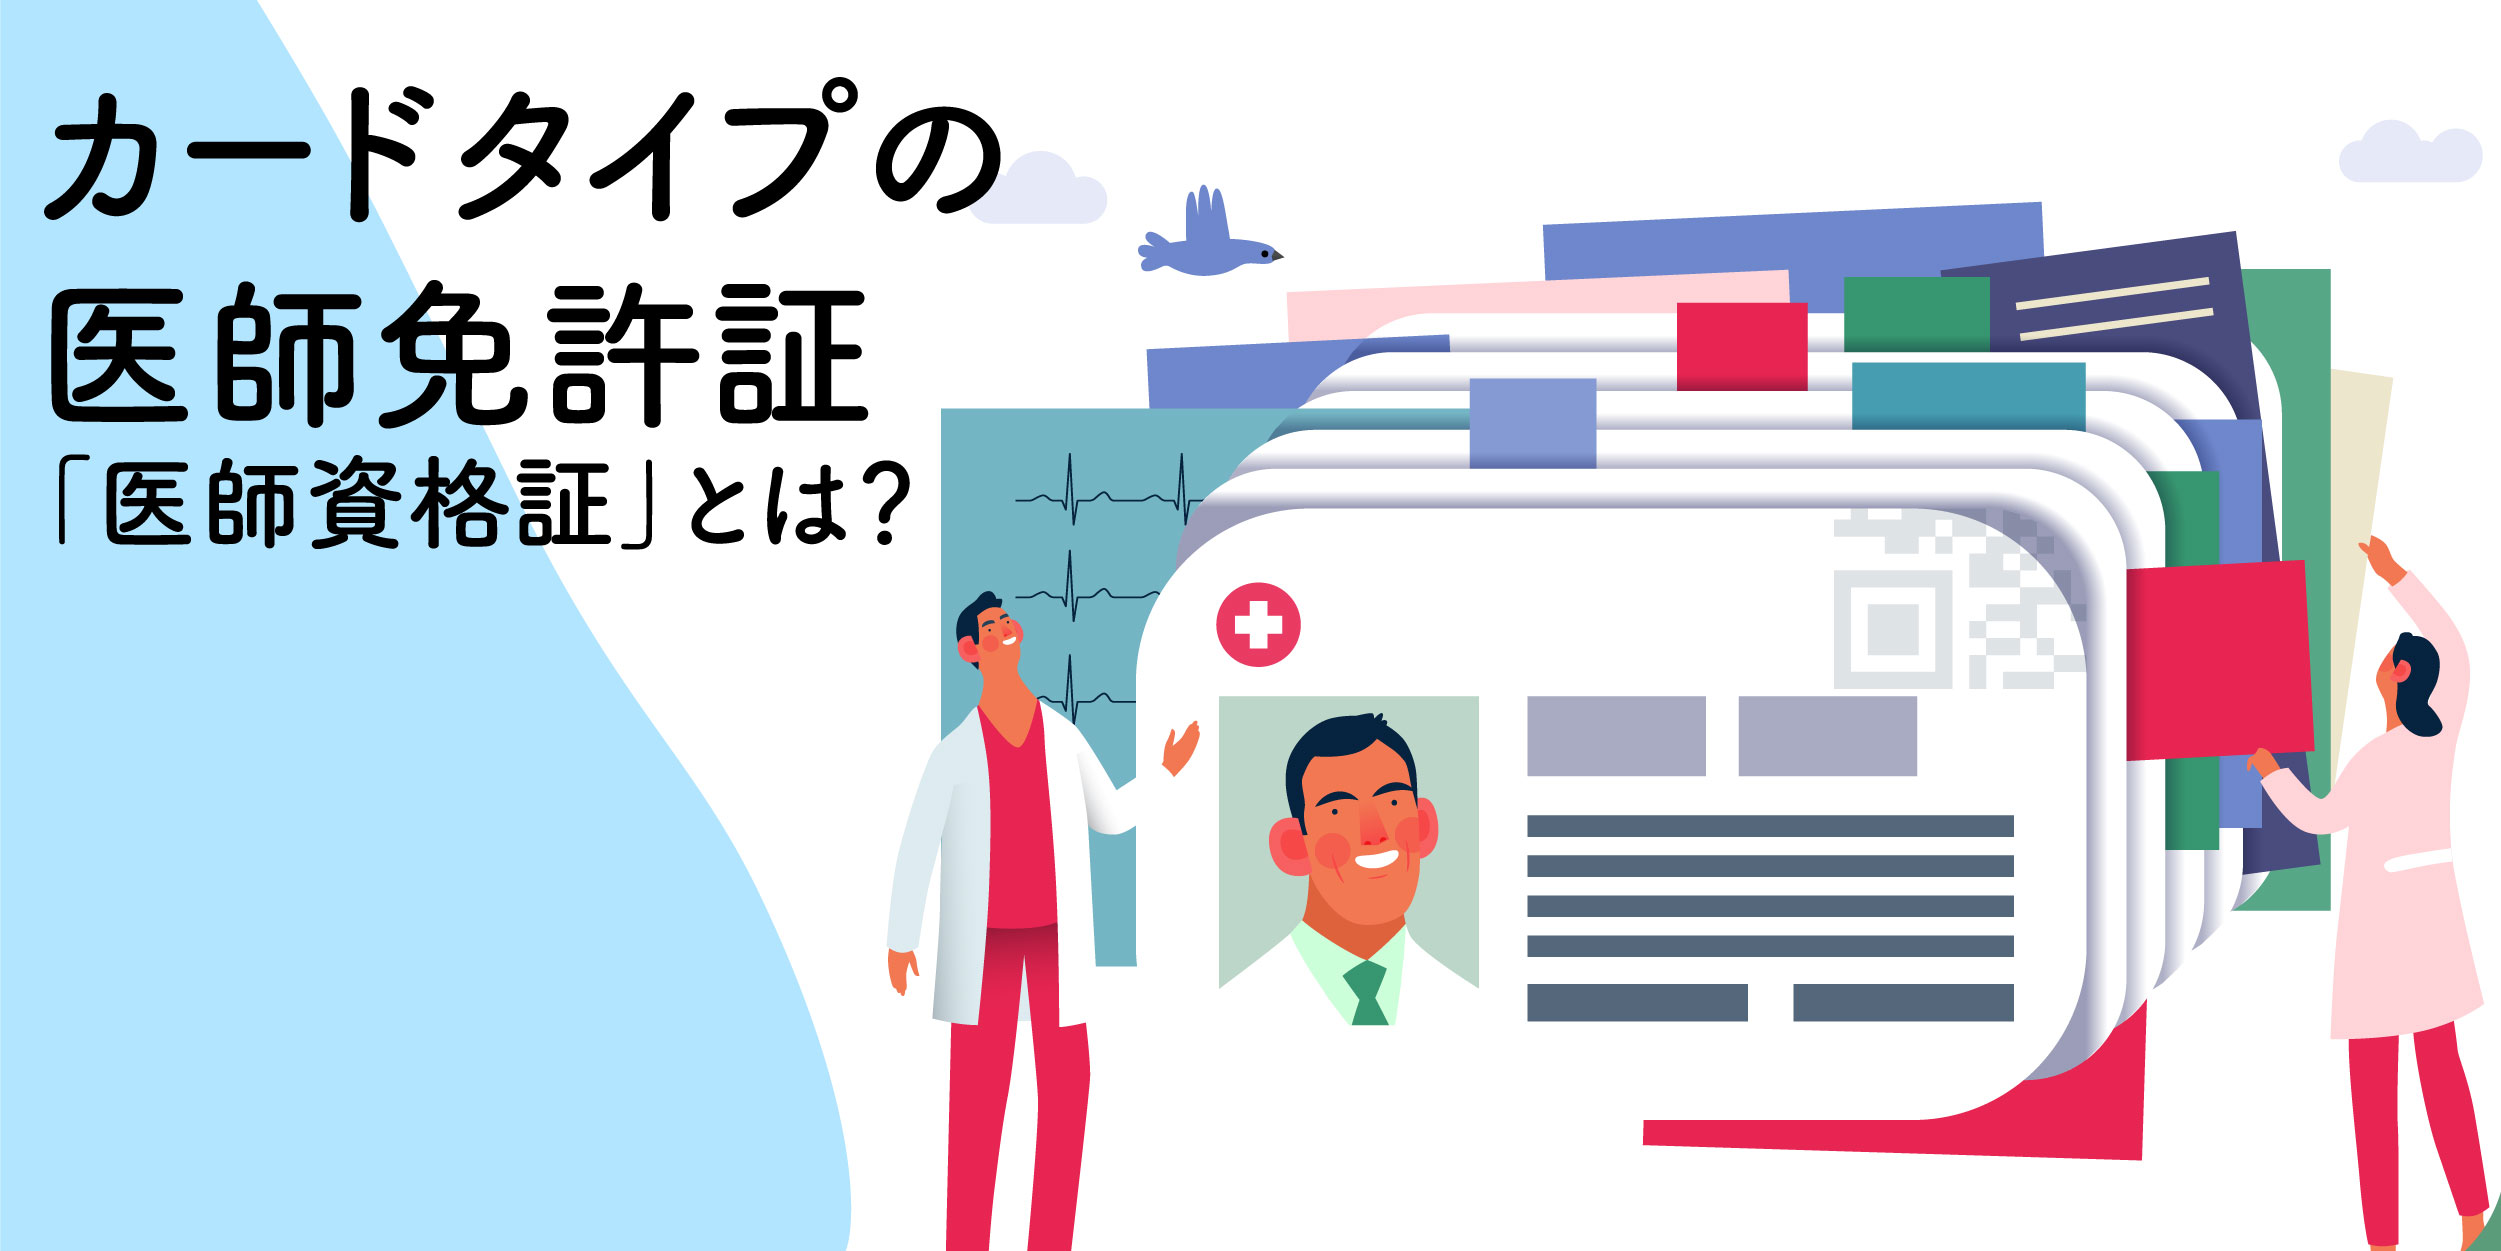 カードタイプの医師免許証 日本医師会の医師資格証とは 費用 申込方法